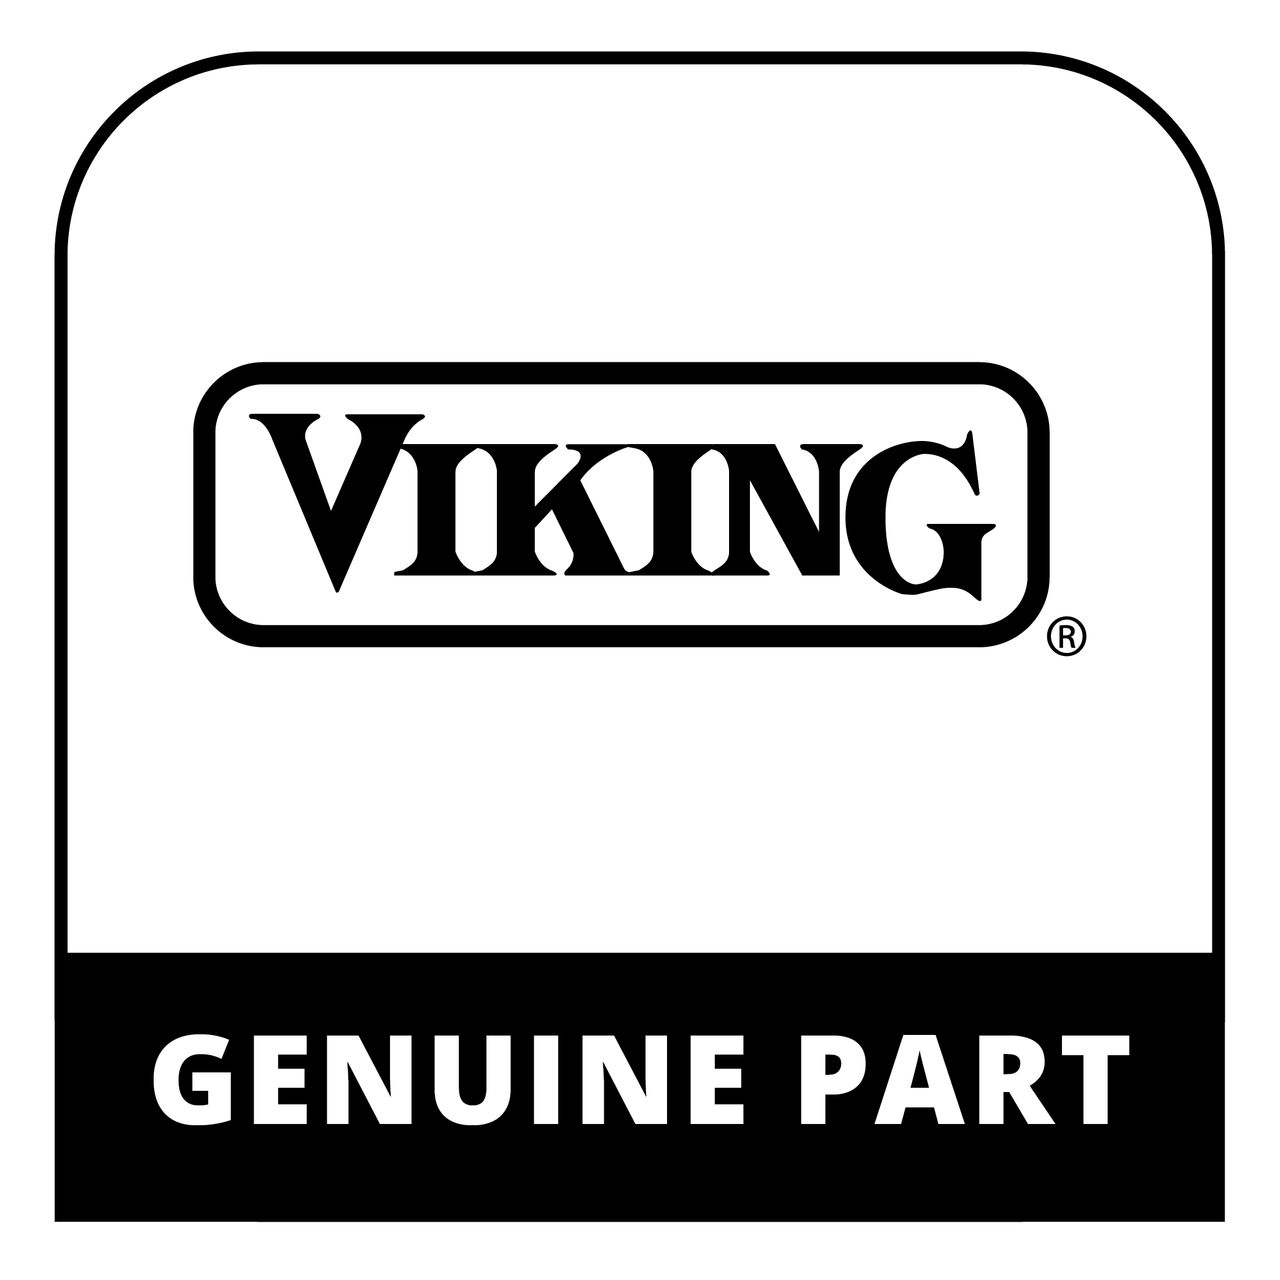 Viking 009654-020 - PANEL, DOOR 30" W/O LOGO GM - Genuine Viking Part